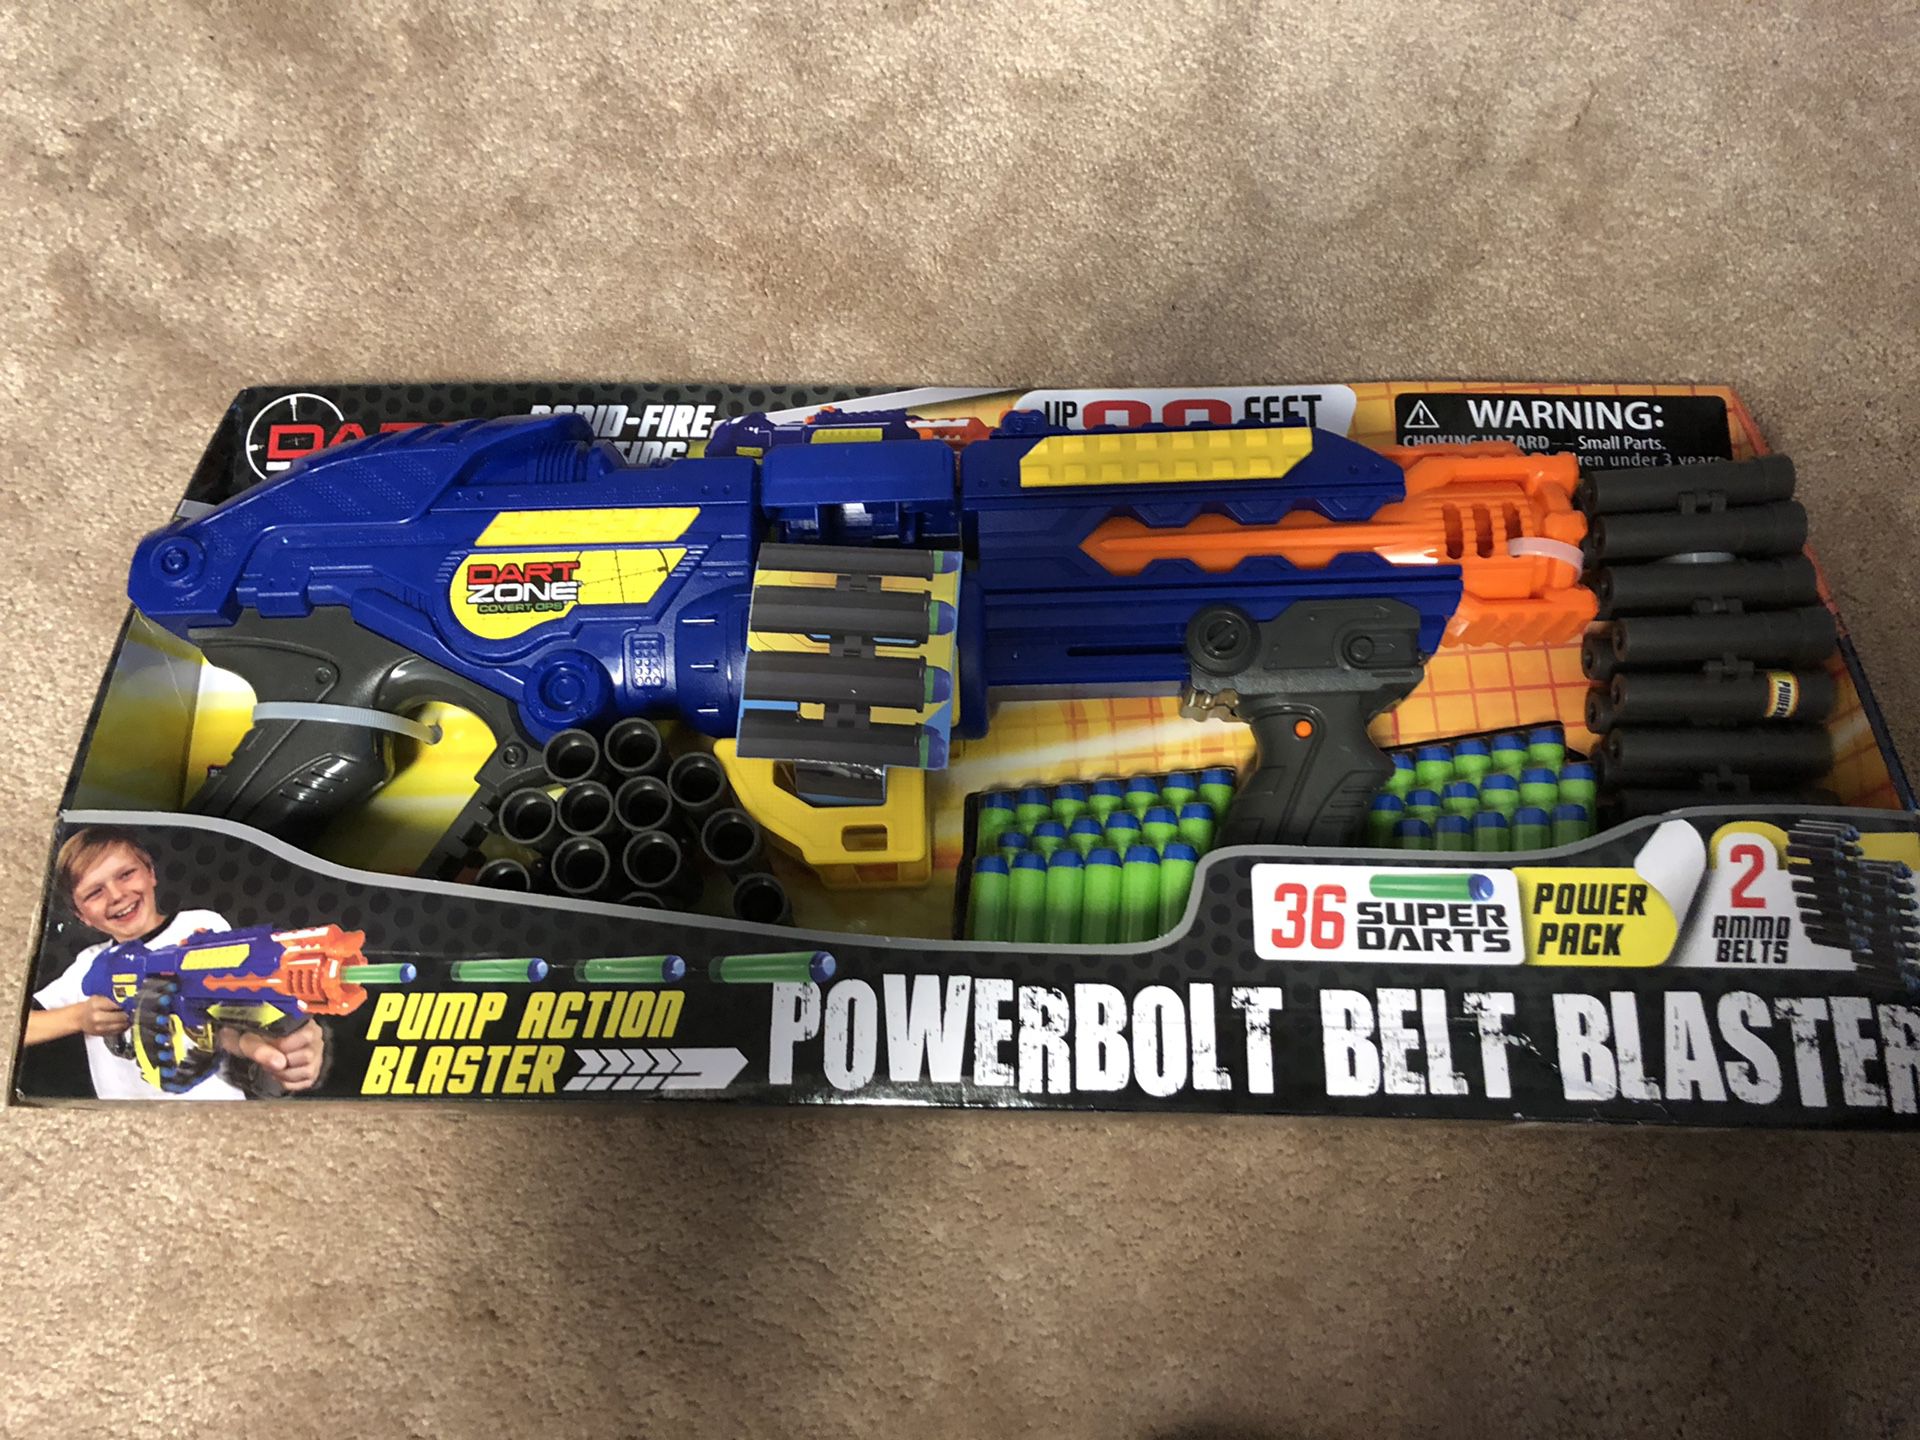 Powerbolt belt blaster nerf gun